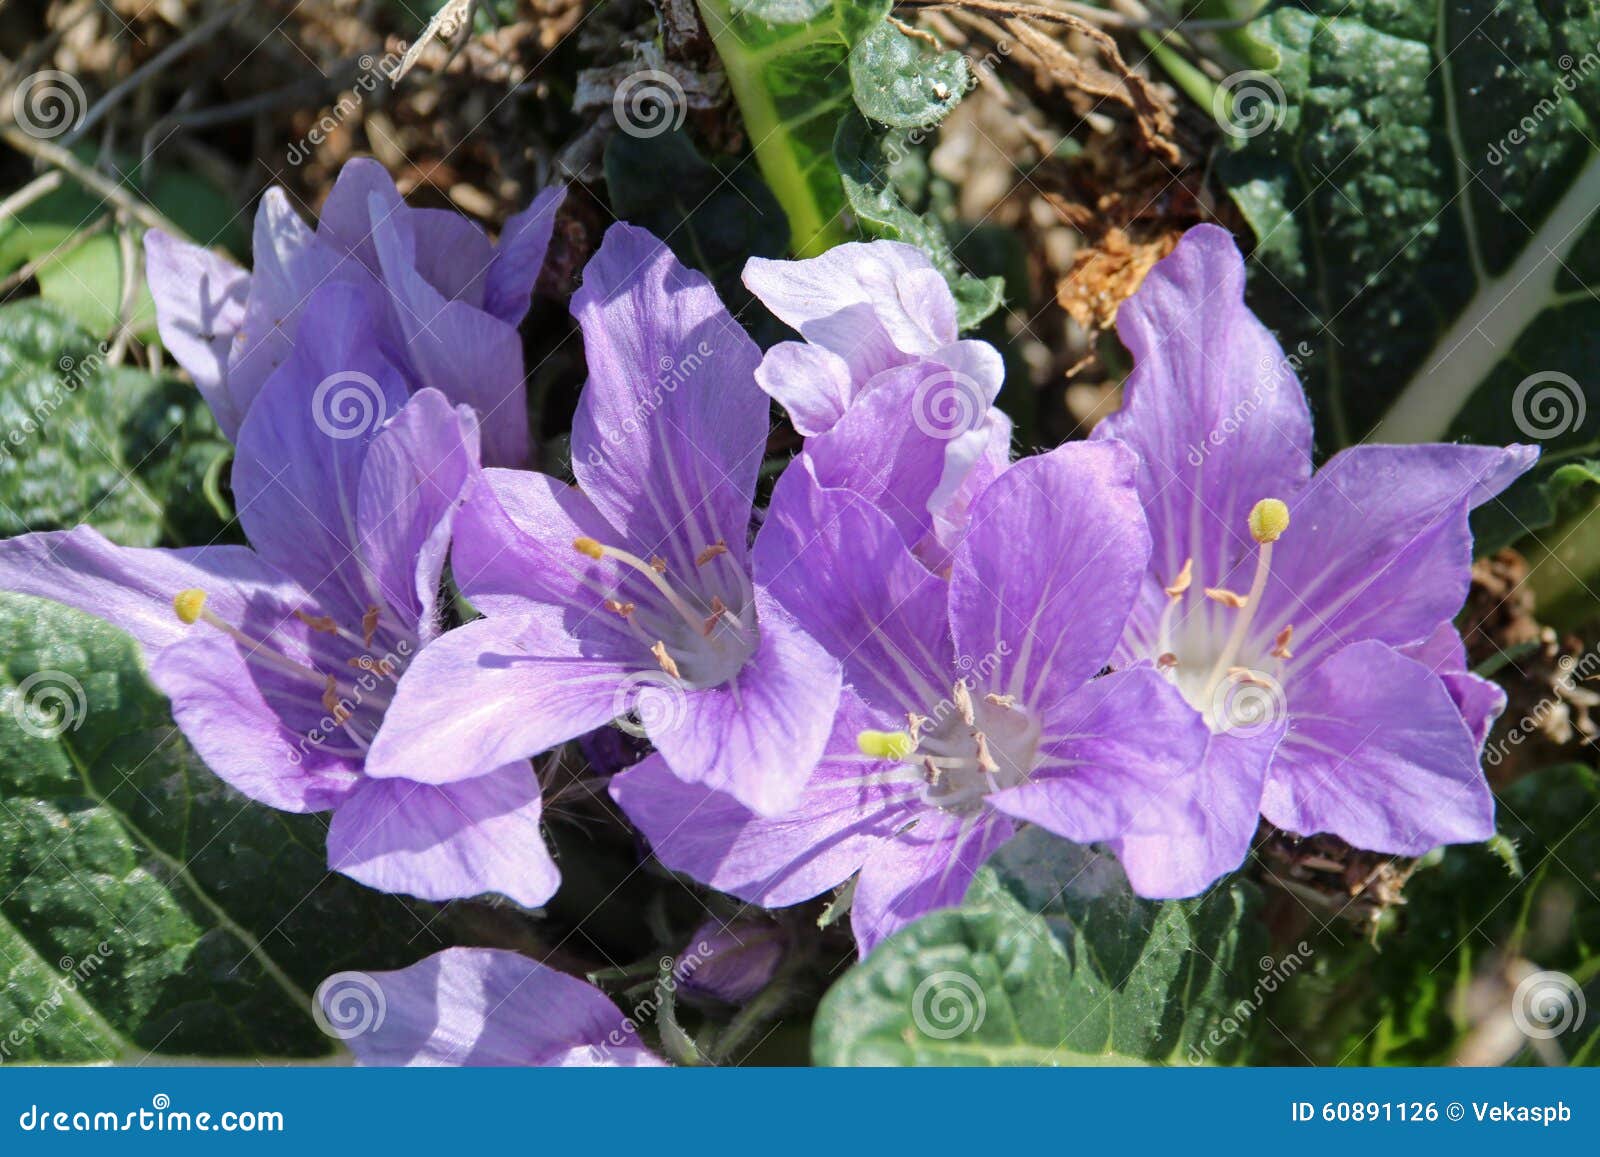 56 fotos de stock e banco de imagens de Mandrake Flower - Getty Images